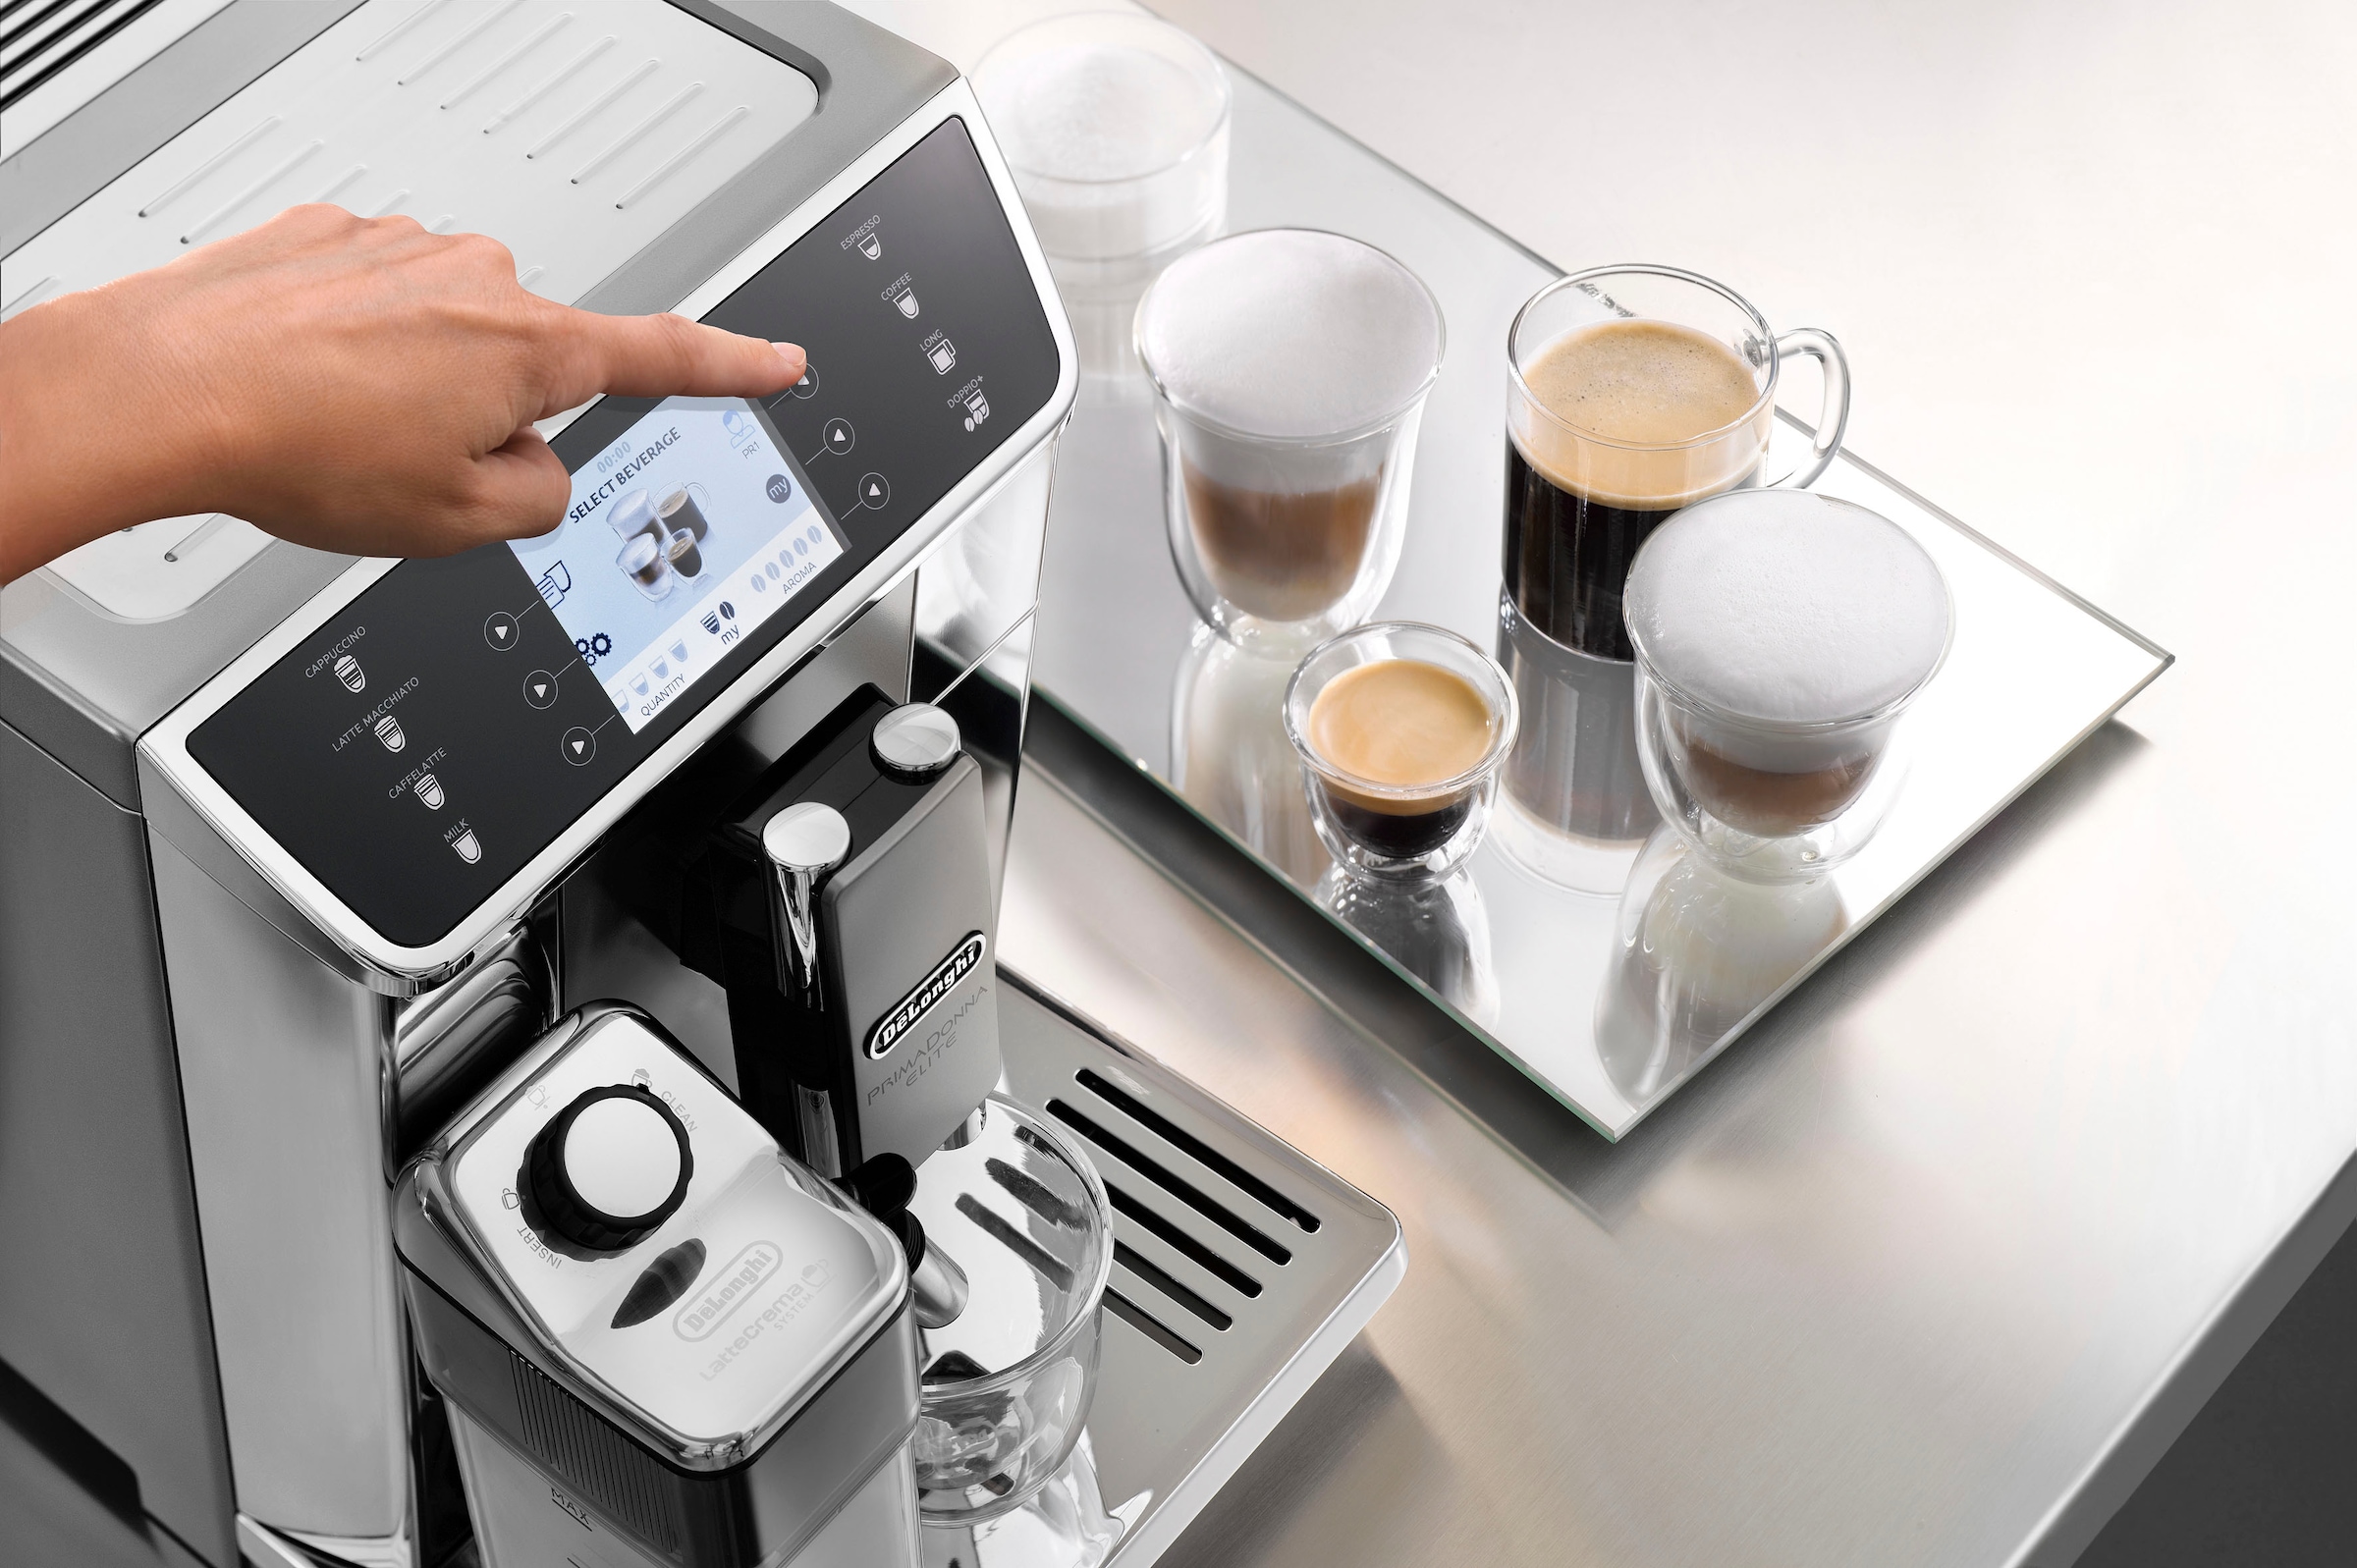 De'Longhi Kaffeevollautomat »PrimaDonna Elite ECAM 656.55.MS«, mit Appsteuerung und Sensor-Touch Direktwahltasten